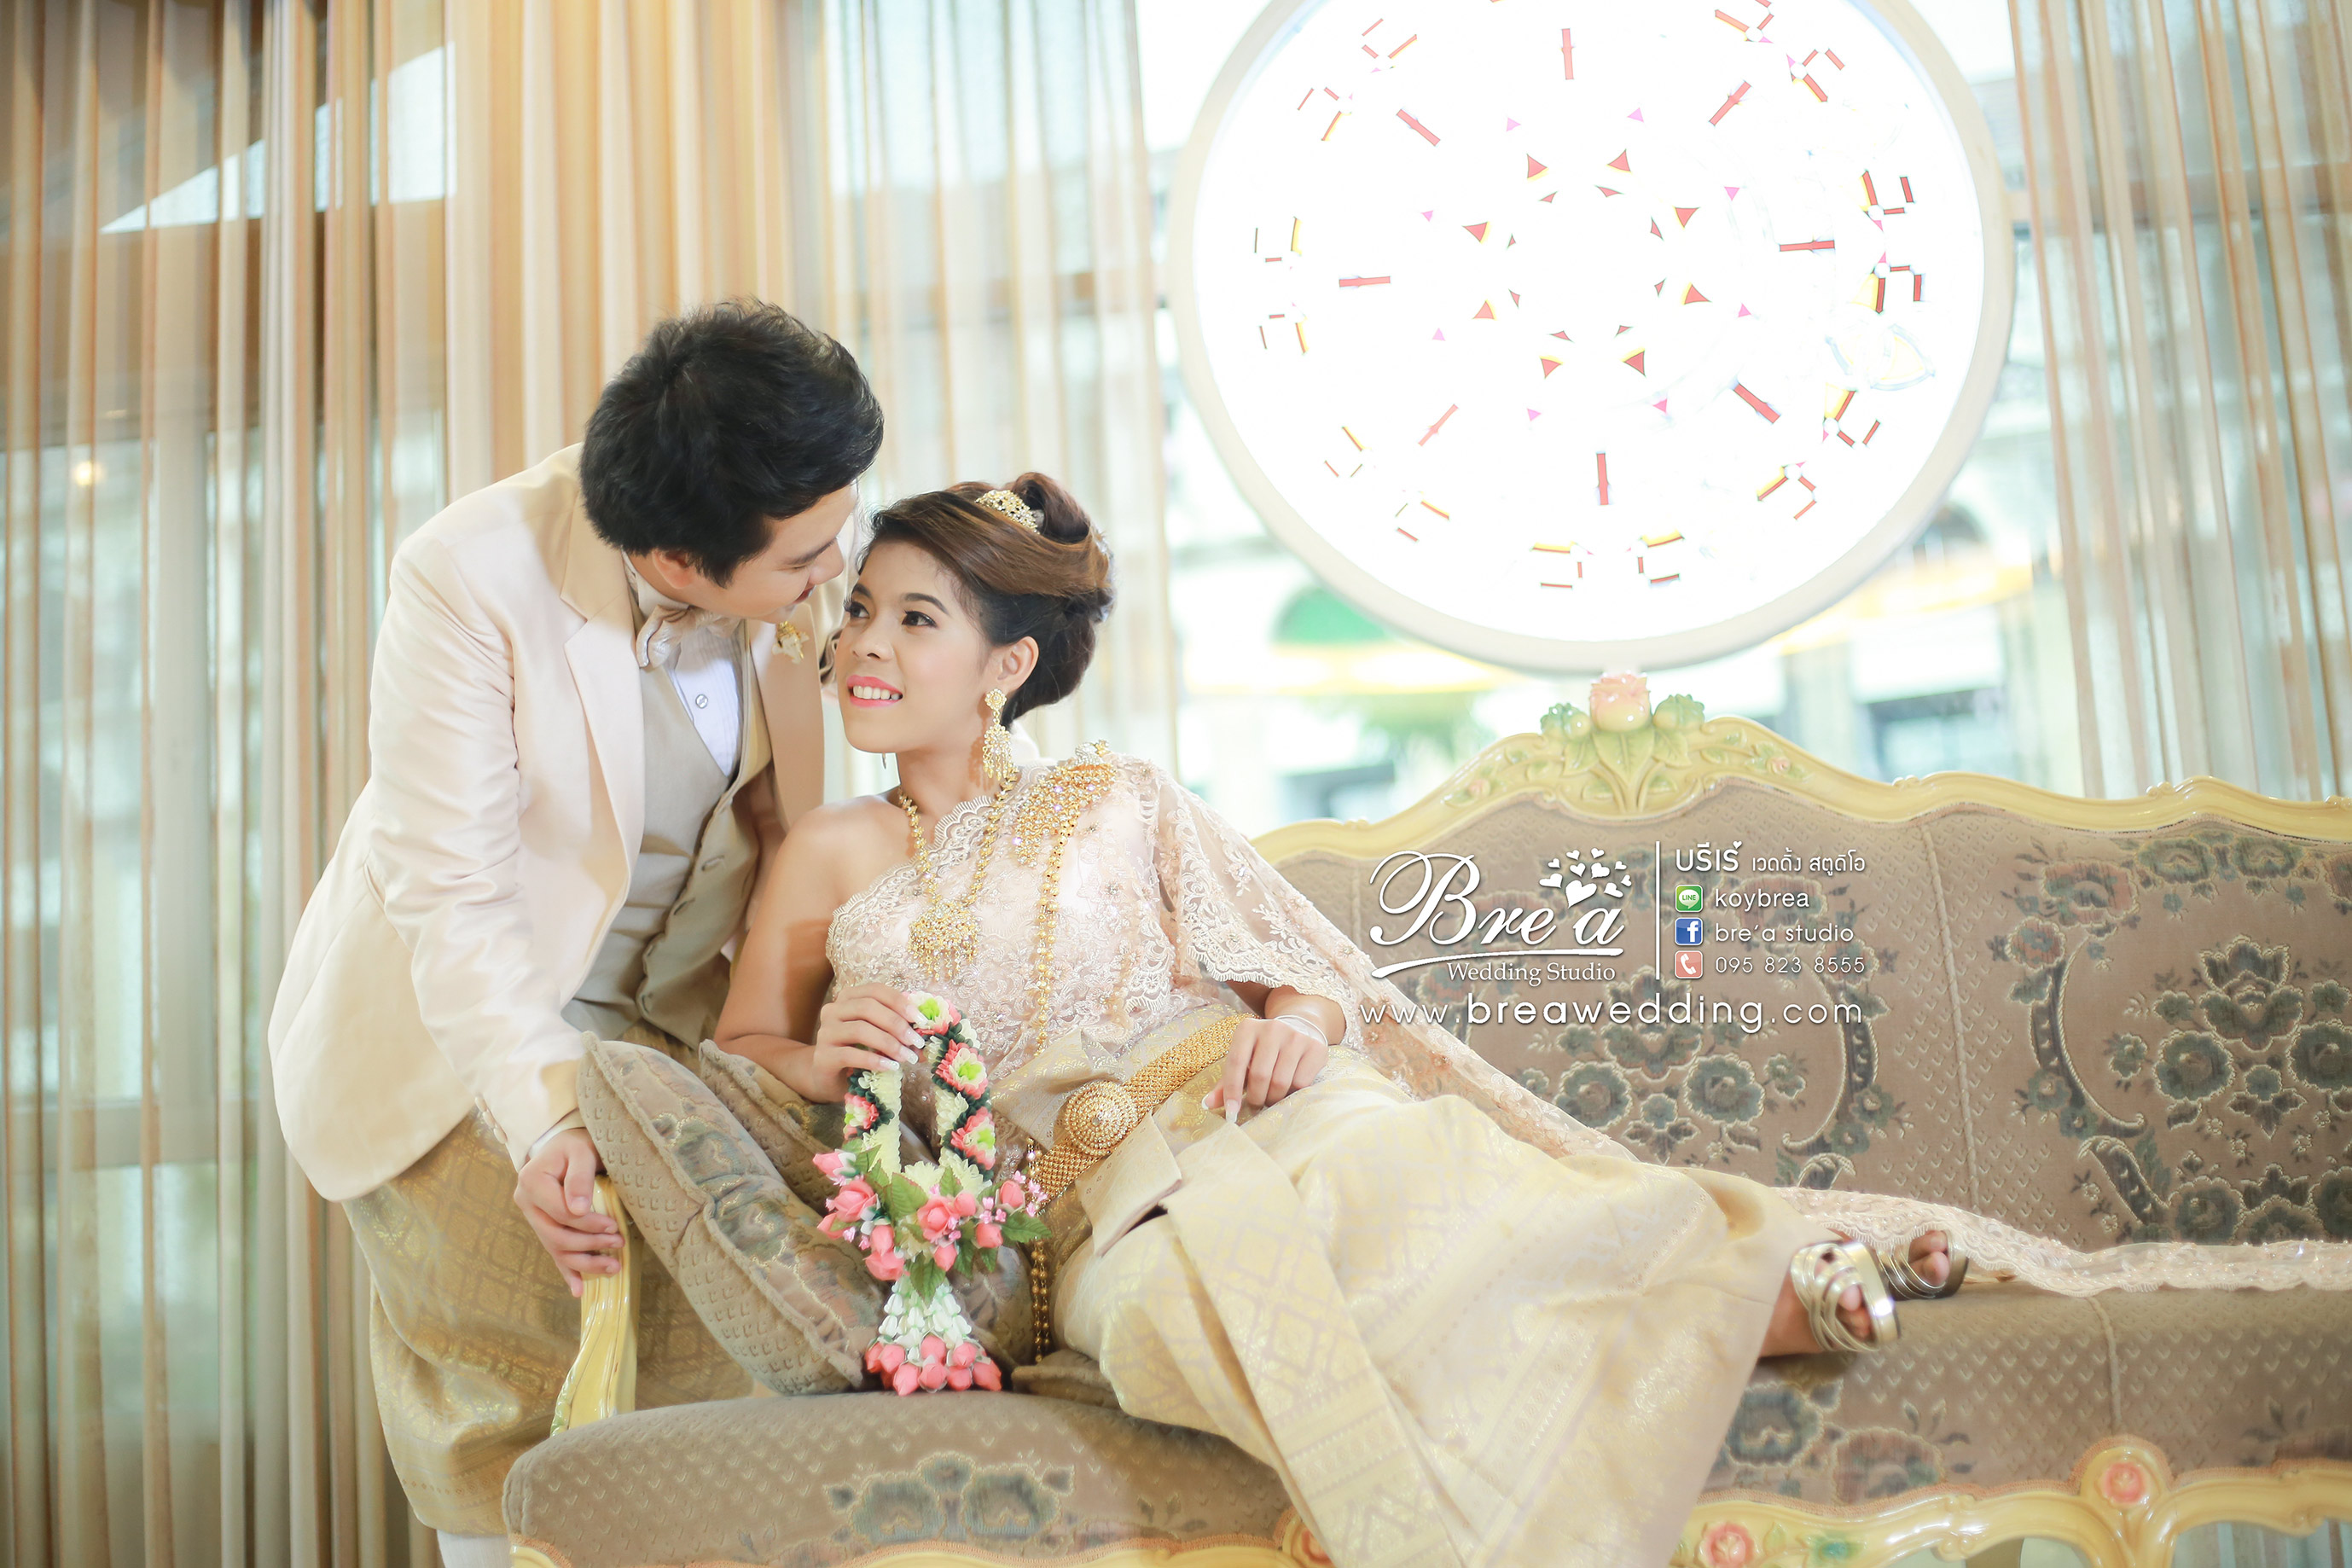 ชุดแต่งงาน ชุดเจ้าสาว ชุดไทยแต่งงาน ร้านเวดดิ้ง ร้านชุดแต่งงาน ถ่ายภาพแต่งงาน นนทบุรี